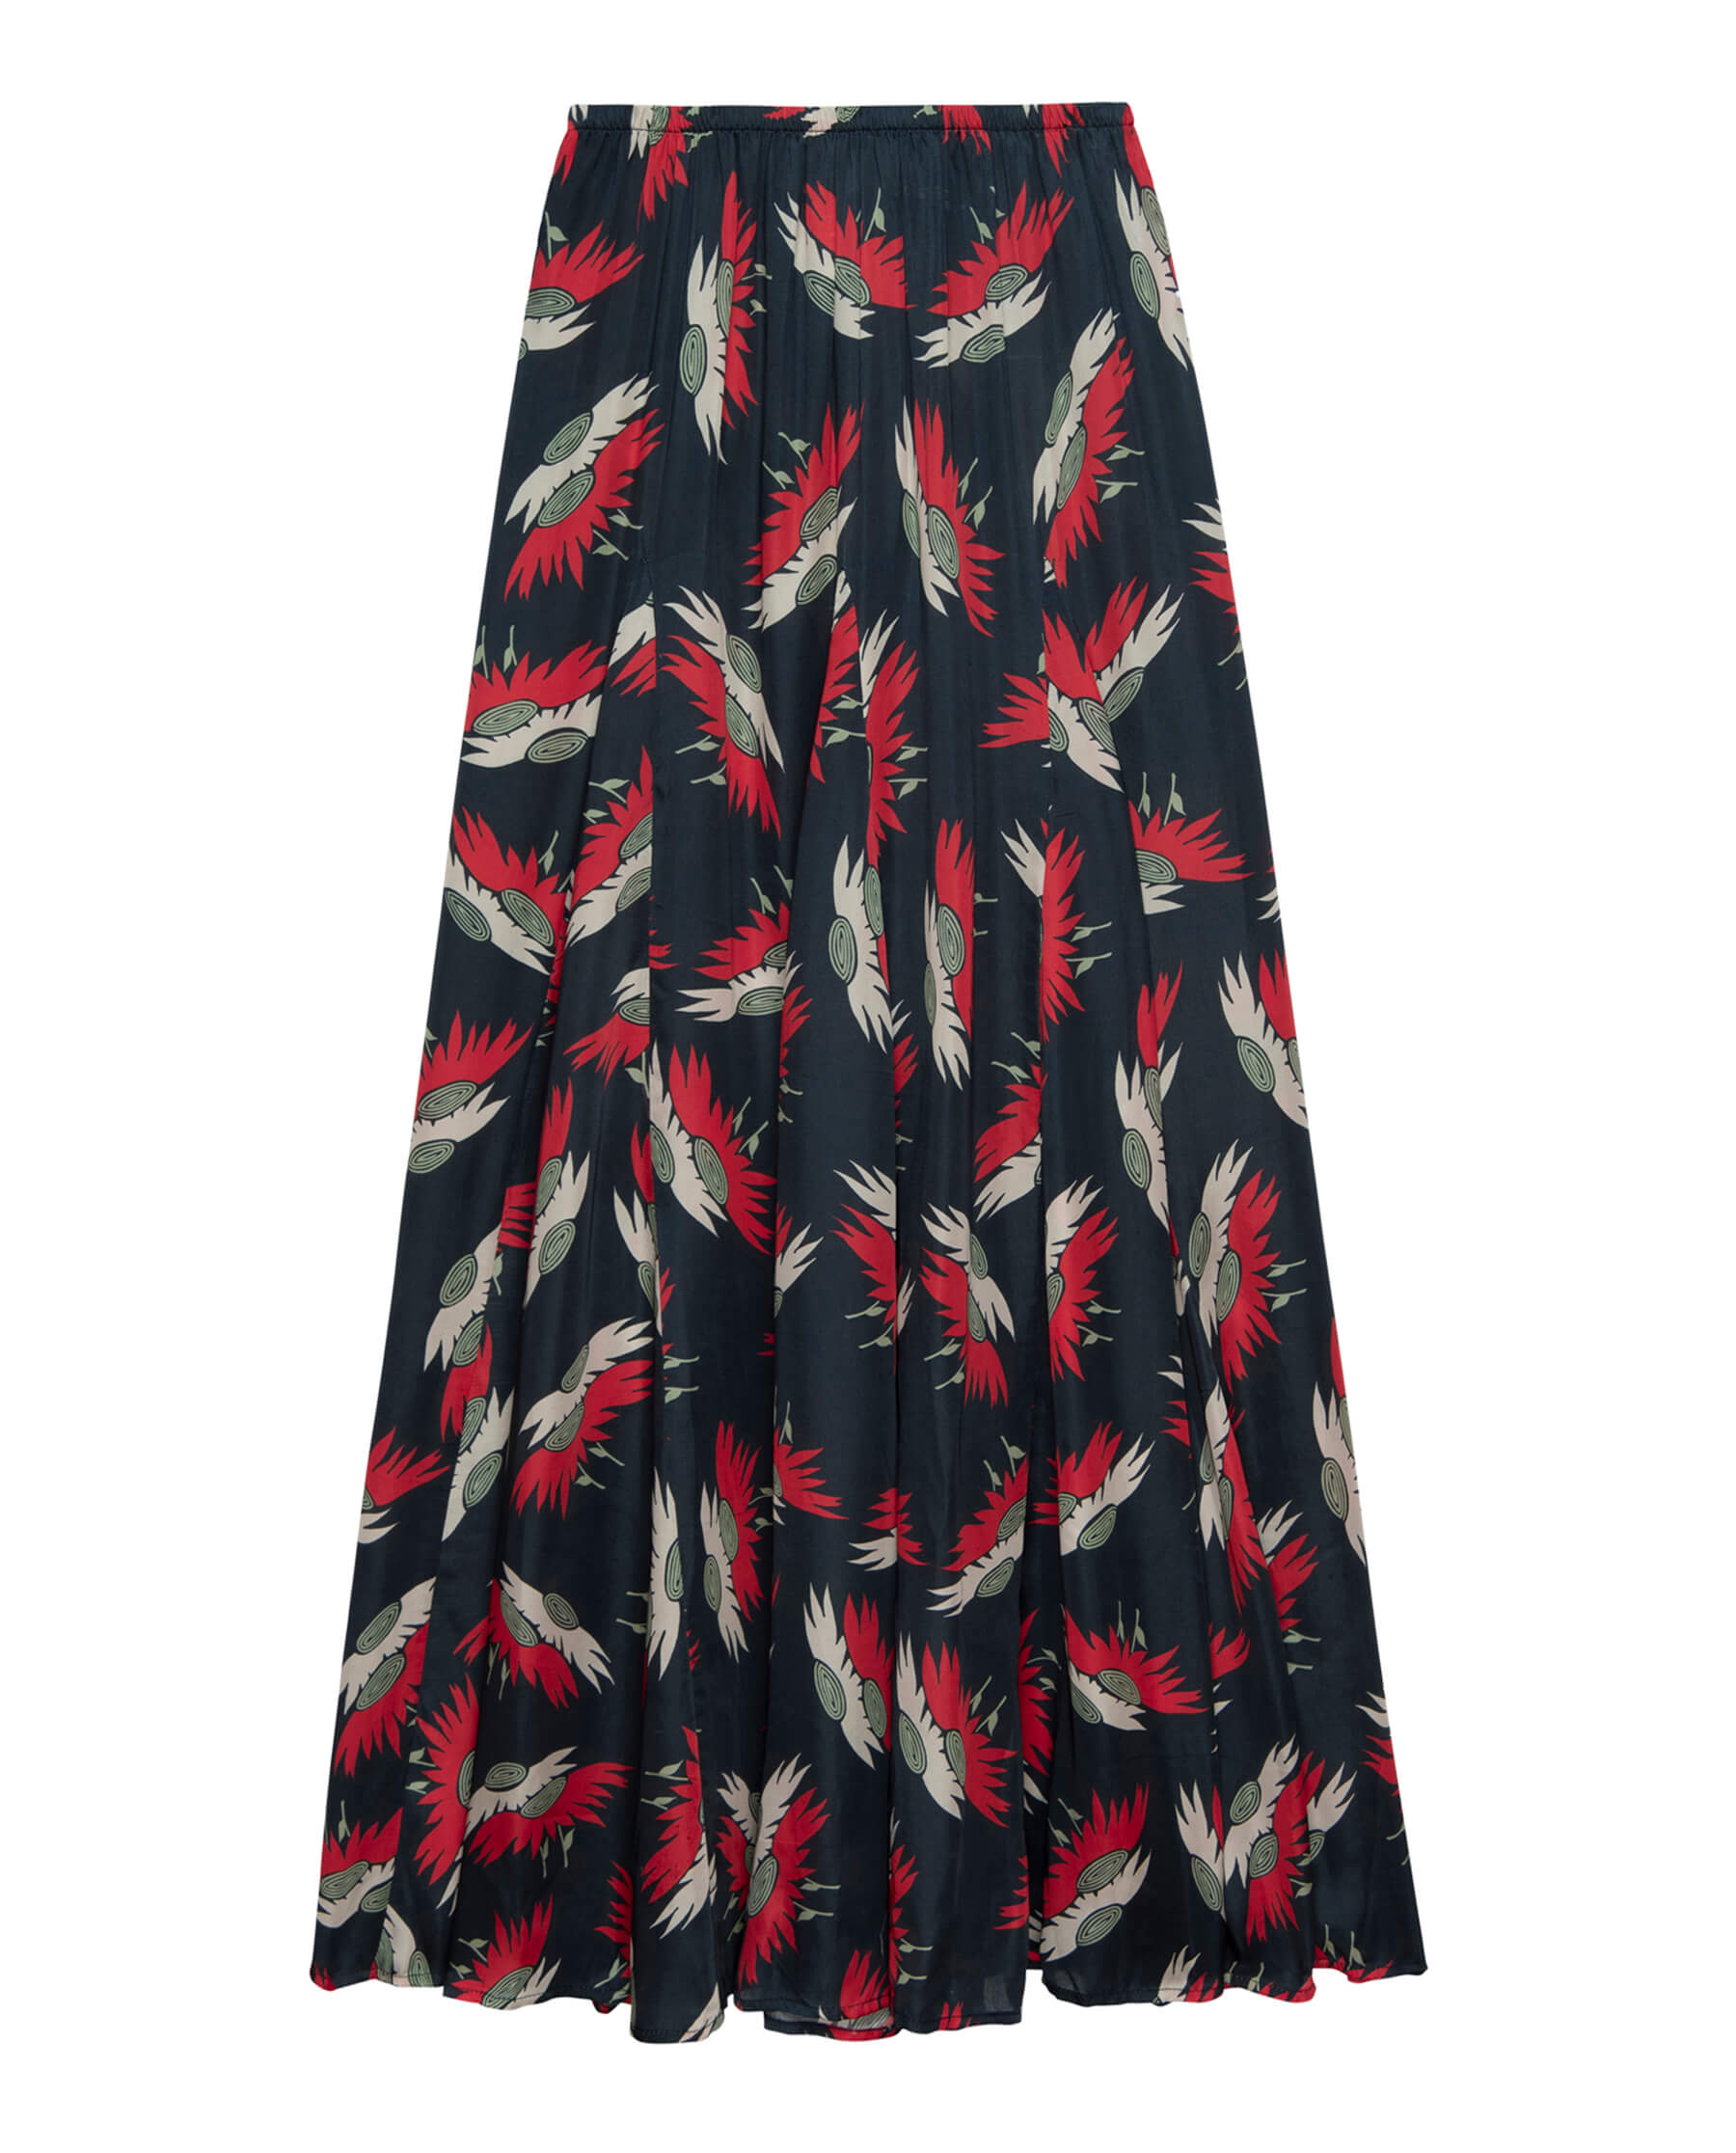 The Great Godet Skirt in Navy Birds of Paradise